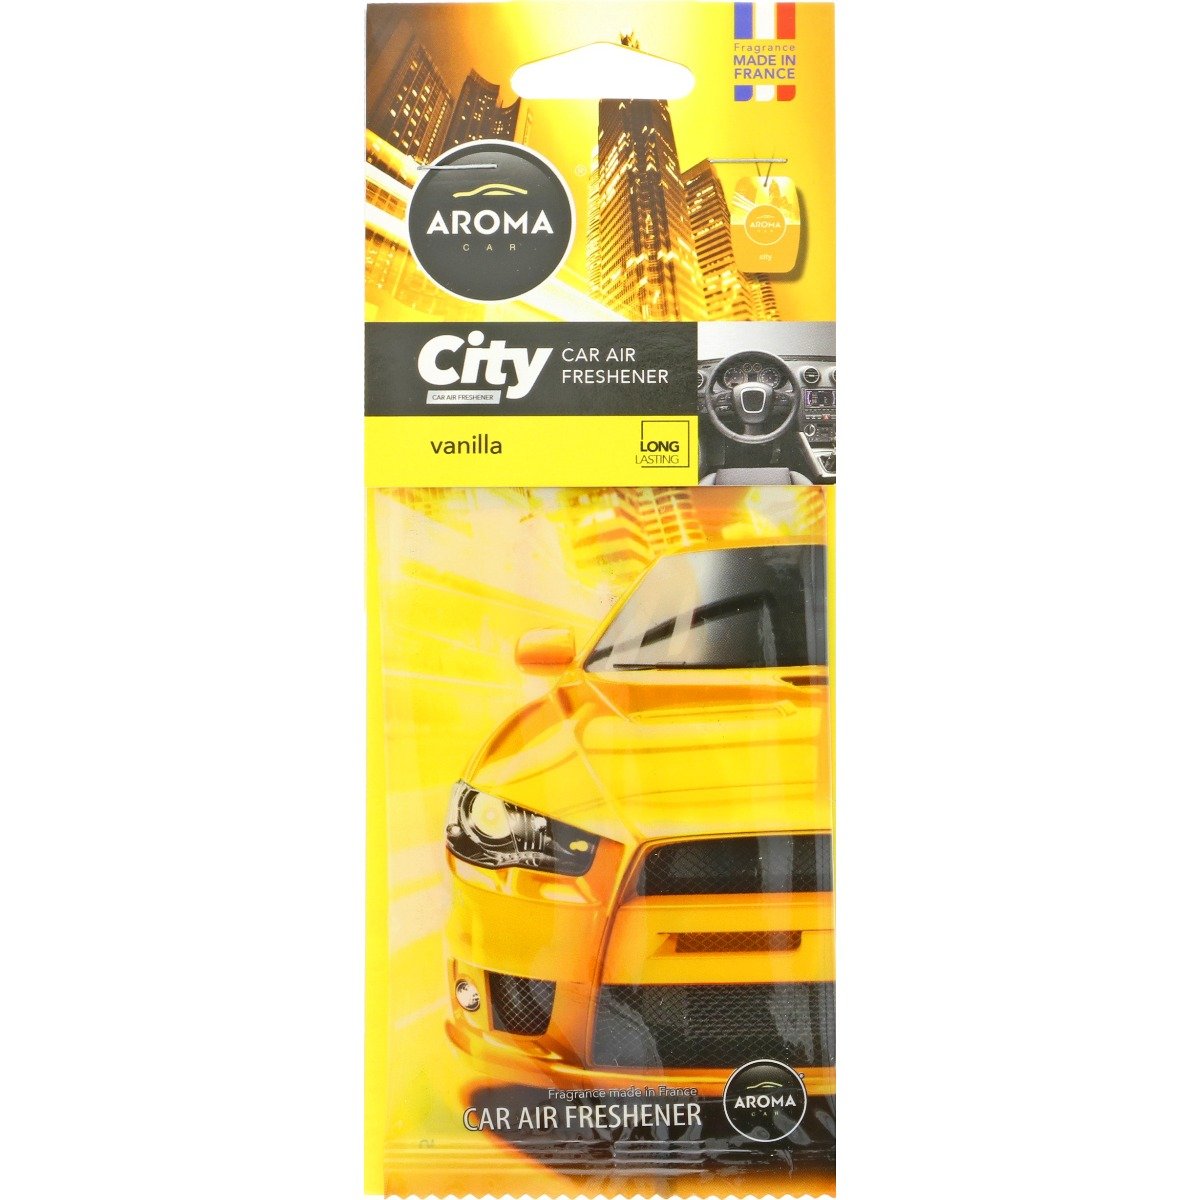 City Car Air Freshener - Vanilla